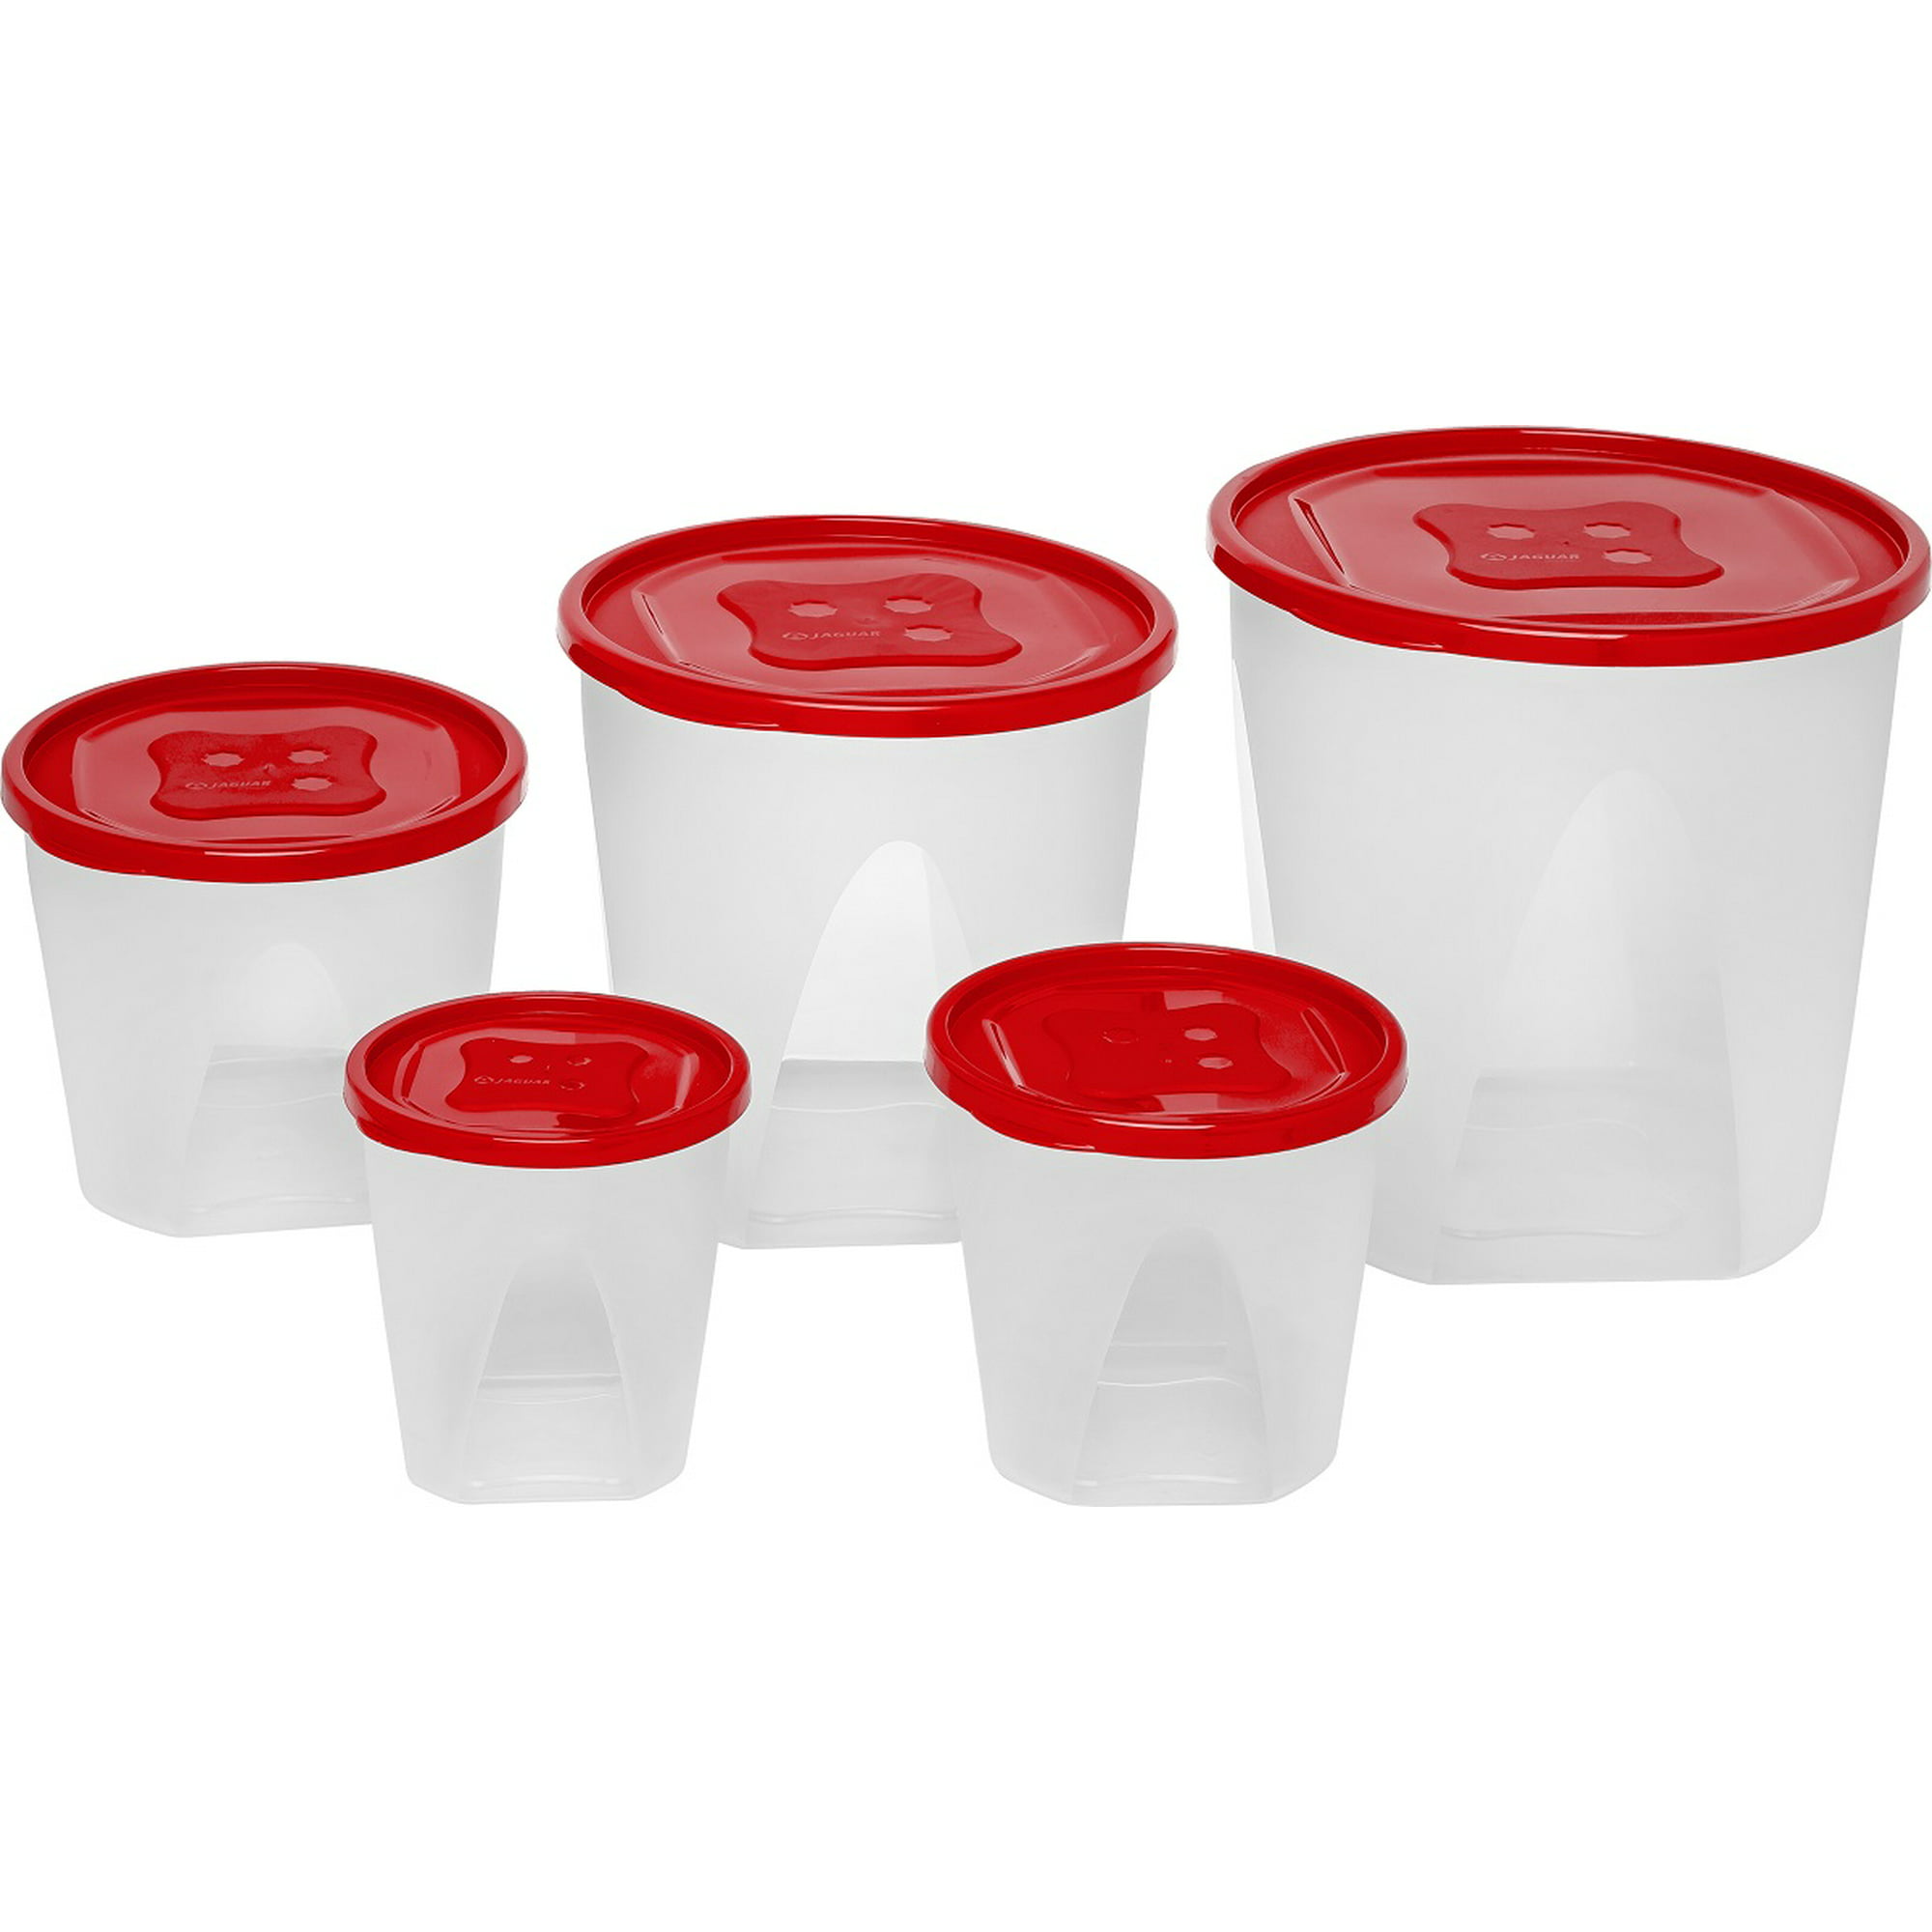 Juego de 3 Contenedores recipientes para alimento con tapa en Plástico  libre de BPA Jaguar Plásticos Articulo de Cocina